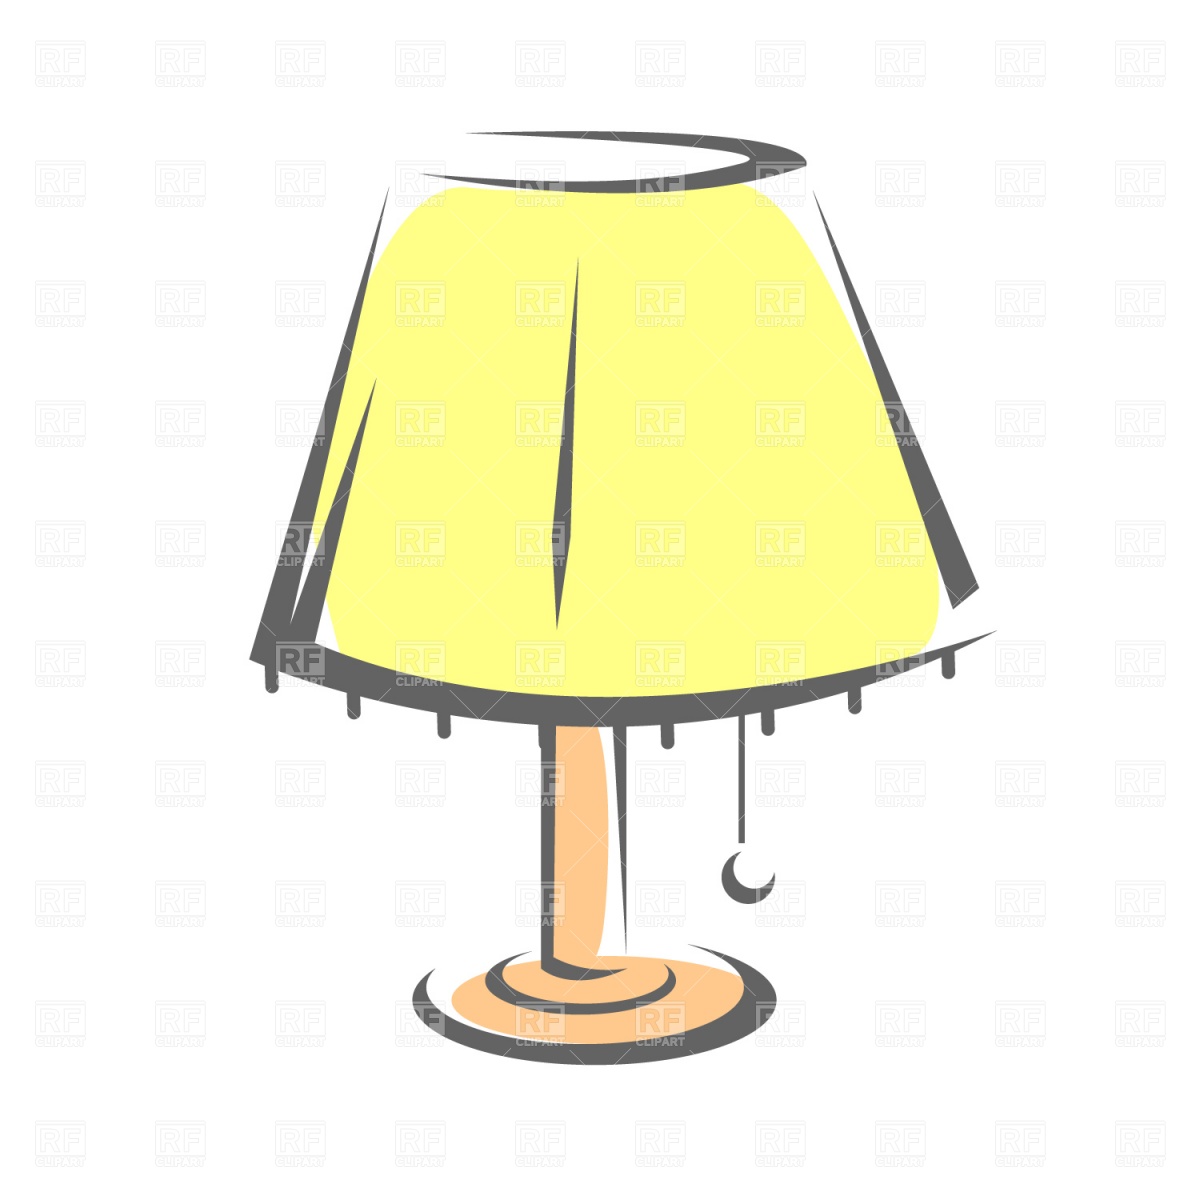 Lamp clip art free - ClipartF